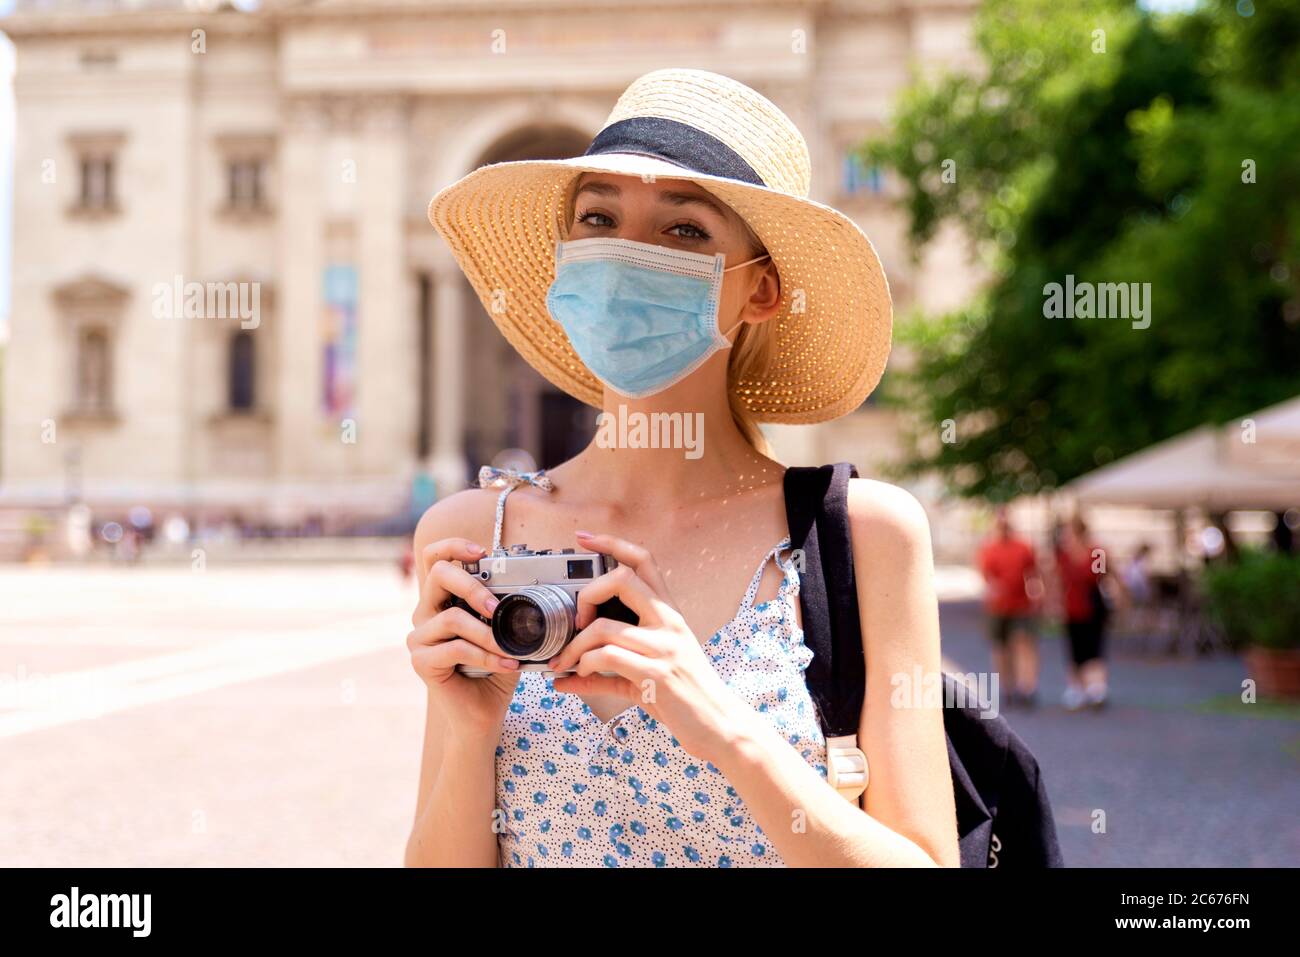 Portrait Aufnahme der schönen blonden Frau trägt Gesichtsmaske zur Prävention, während mit der Kamera, um Fotos in der Stadt. Stockfoto